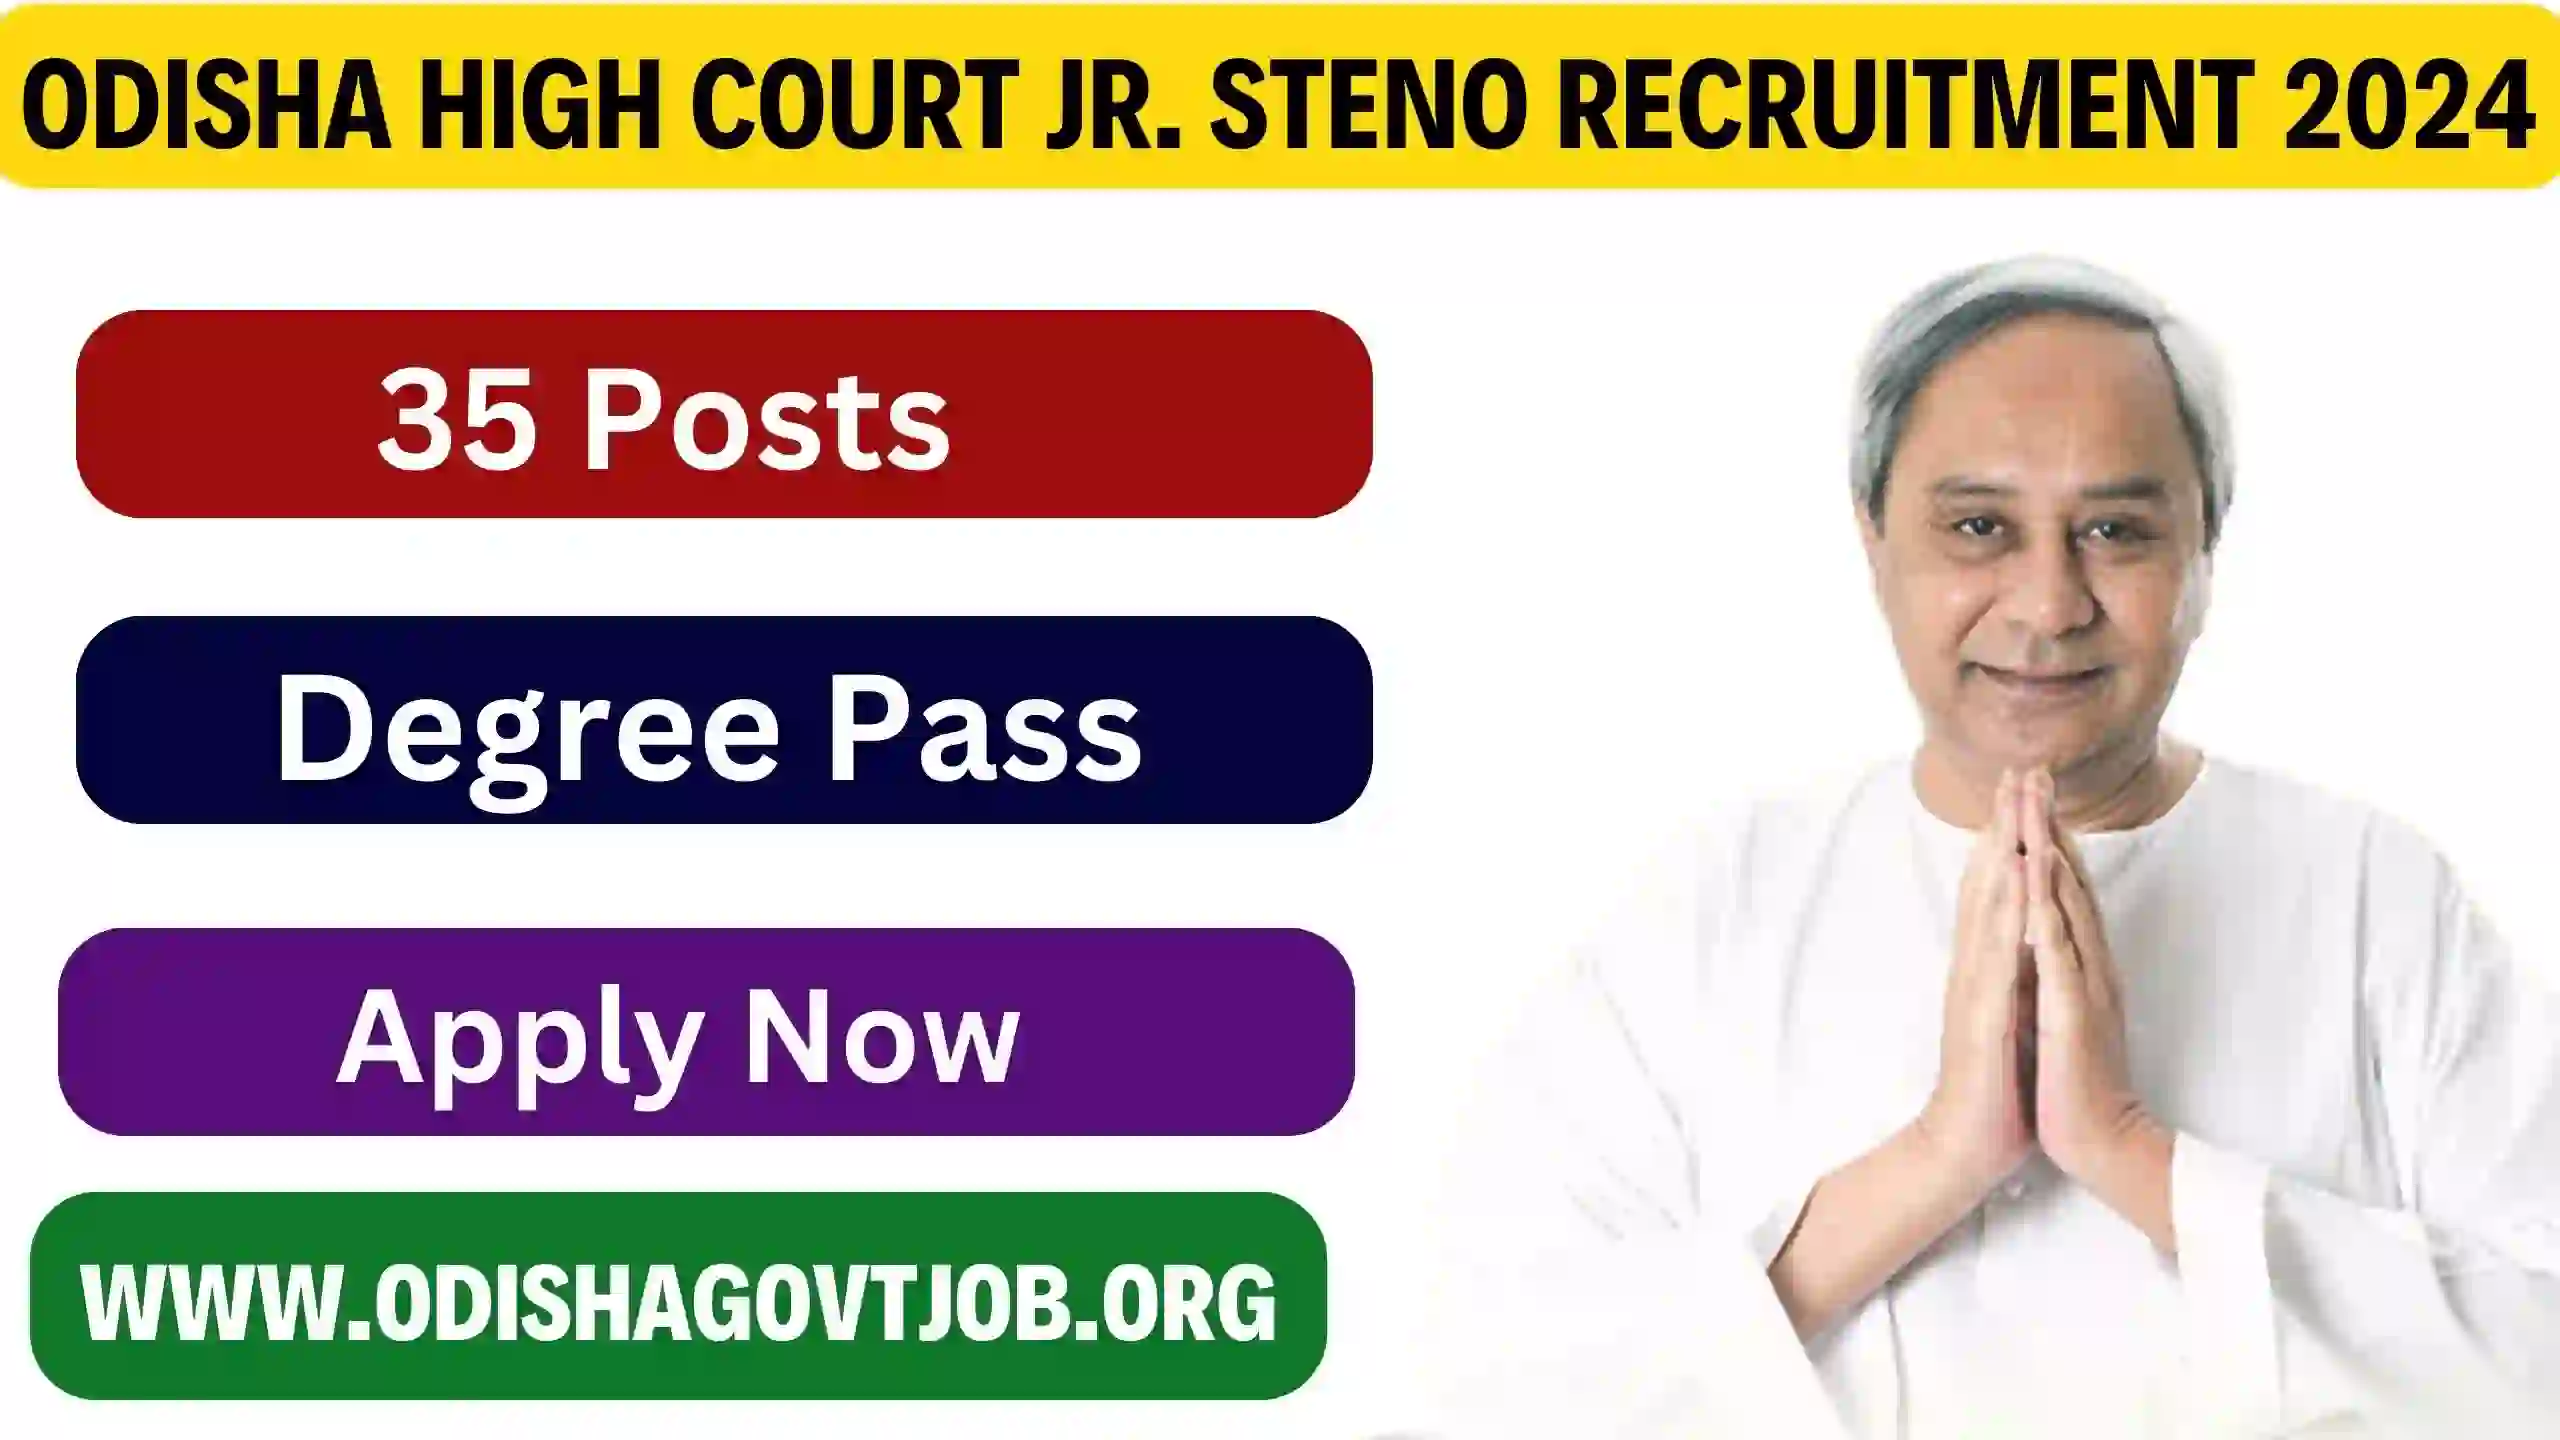 Odisha High Court Jr. Steno Recruitment 2024